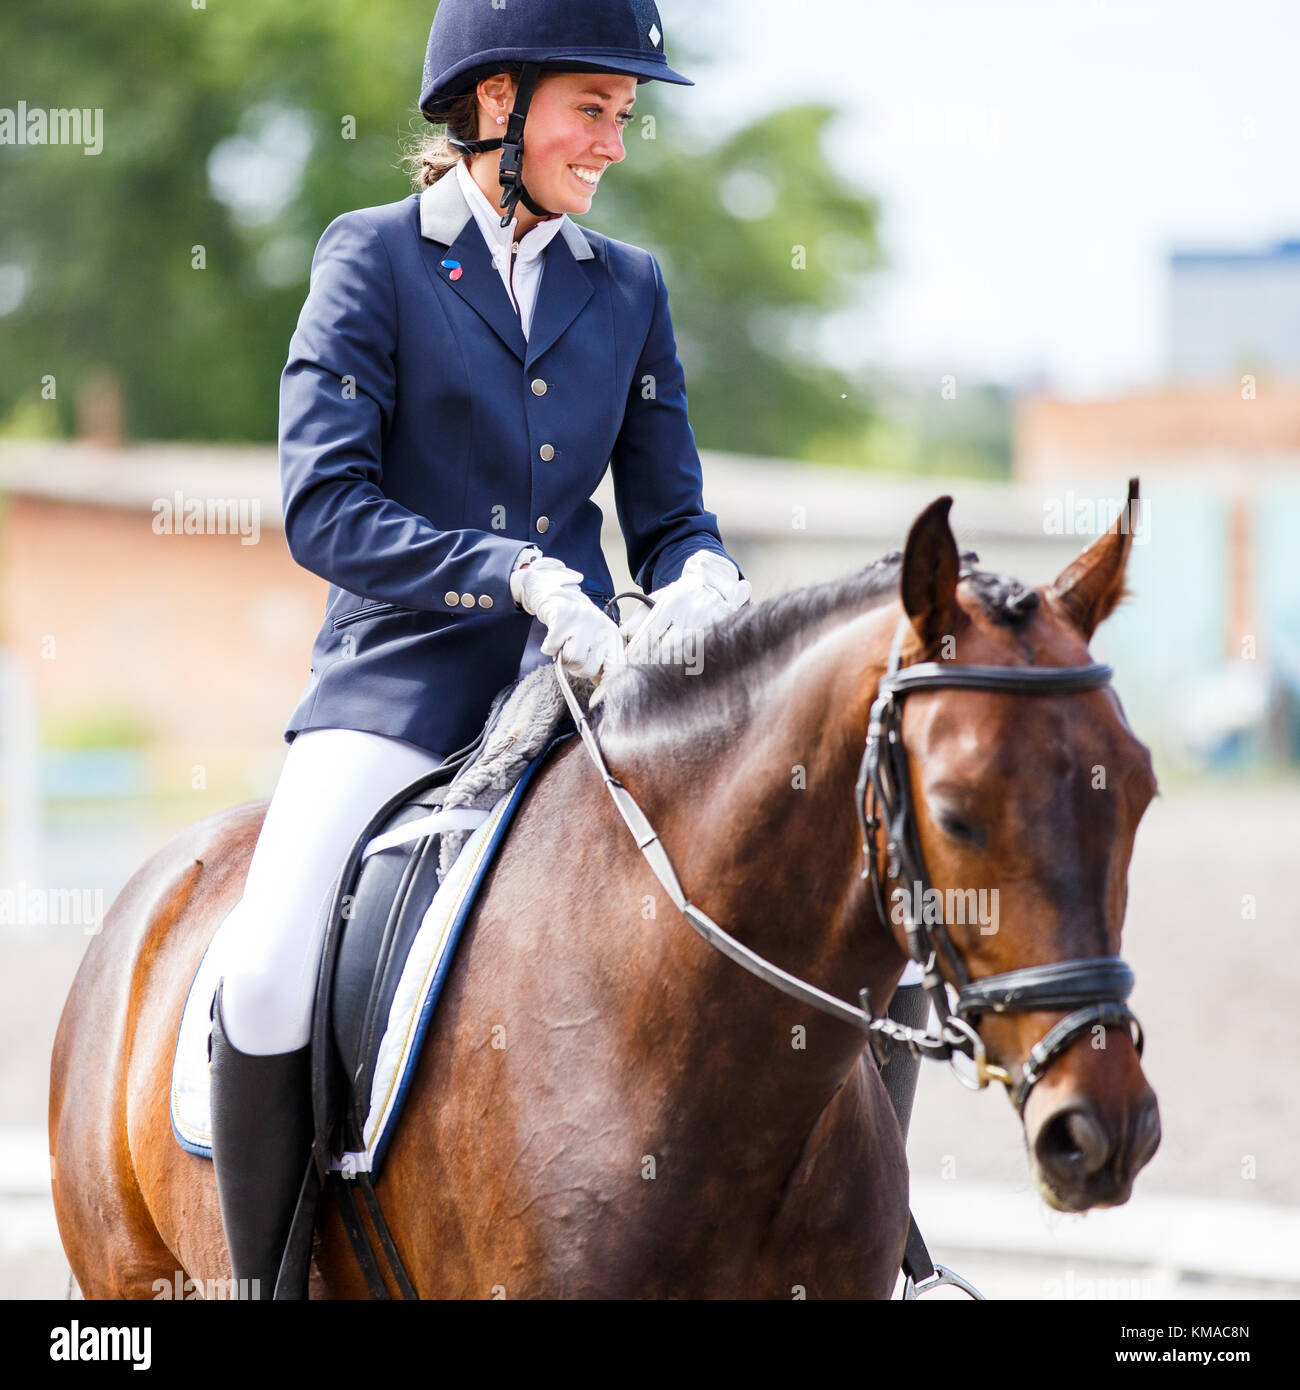 Jeune femme heureuse sur son cheval après la baie de test de dressage sur compétitions équestres Banque D'Images